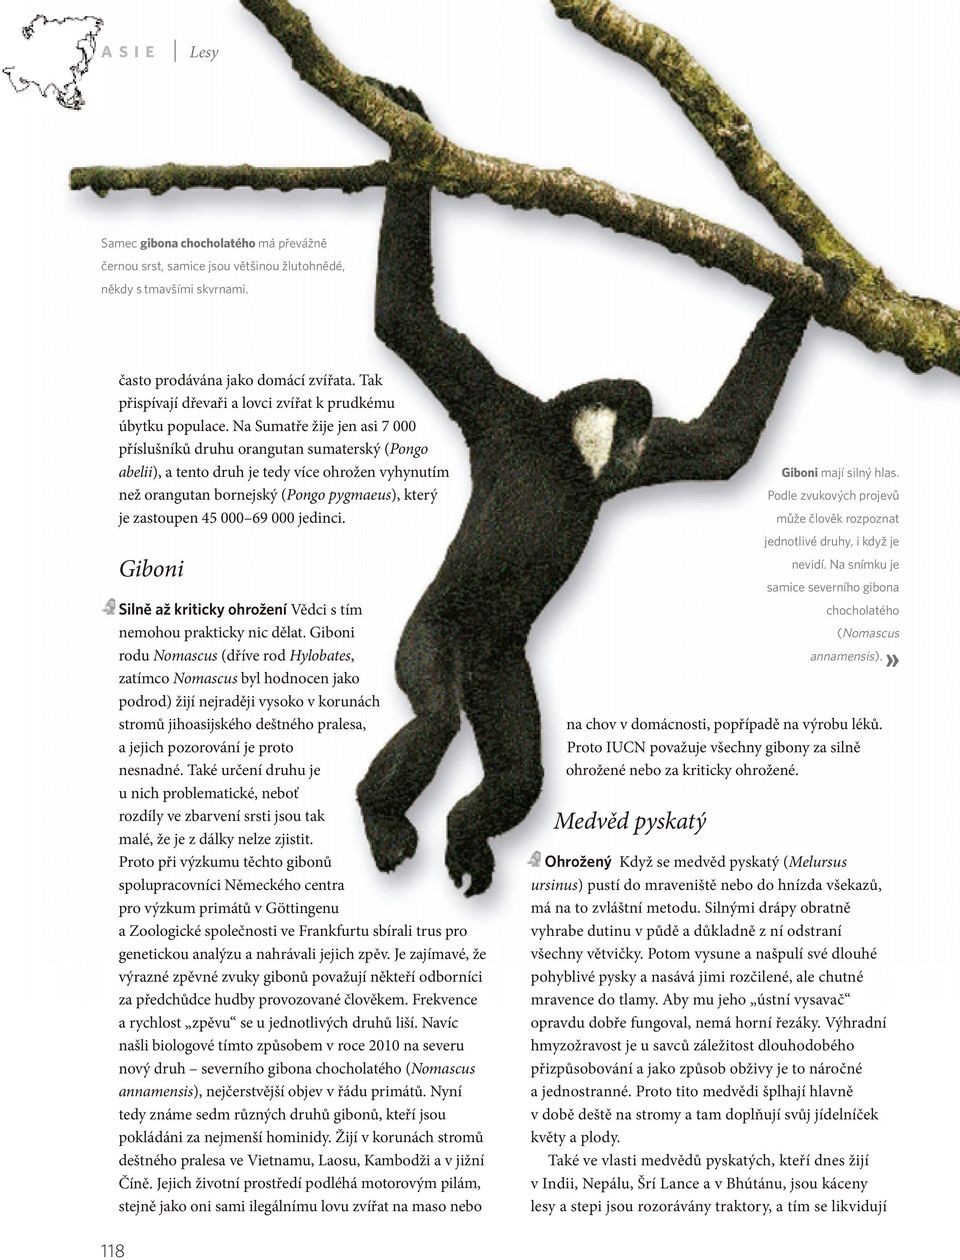 Na Sumatře žije jen asi 7 000 příslušníků druhu orangutan sumaterský (Pongo abelii), a tento druh je tedy více ohrožen vyhynutím než orangutan bornejský (Pongo pygmaeus), který je zastoupen 45 000 69